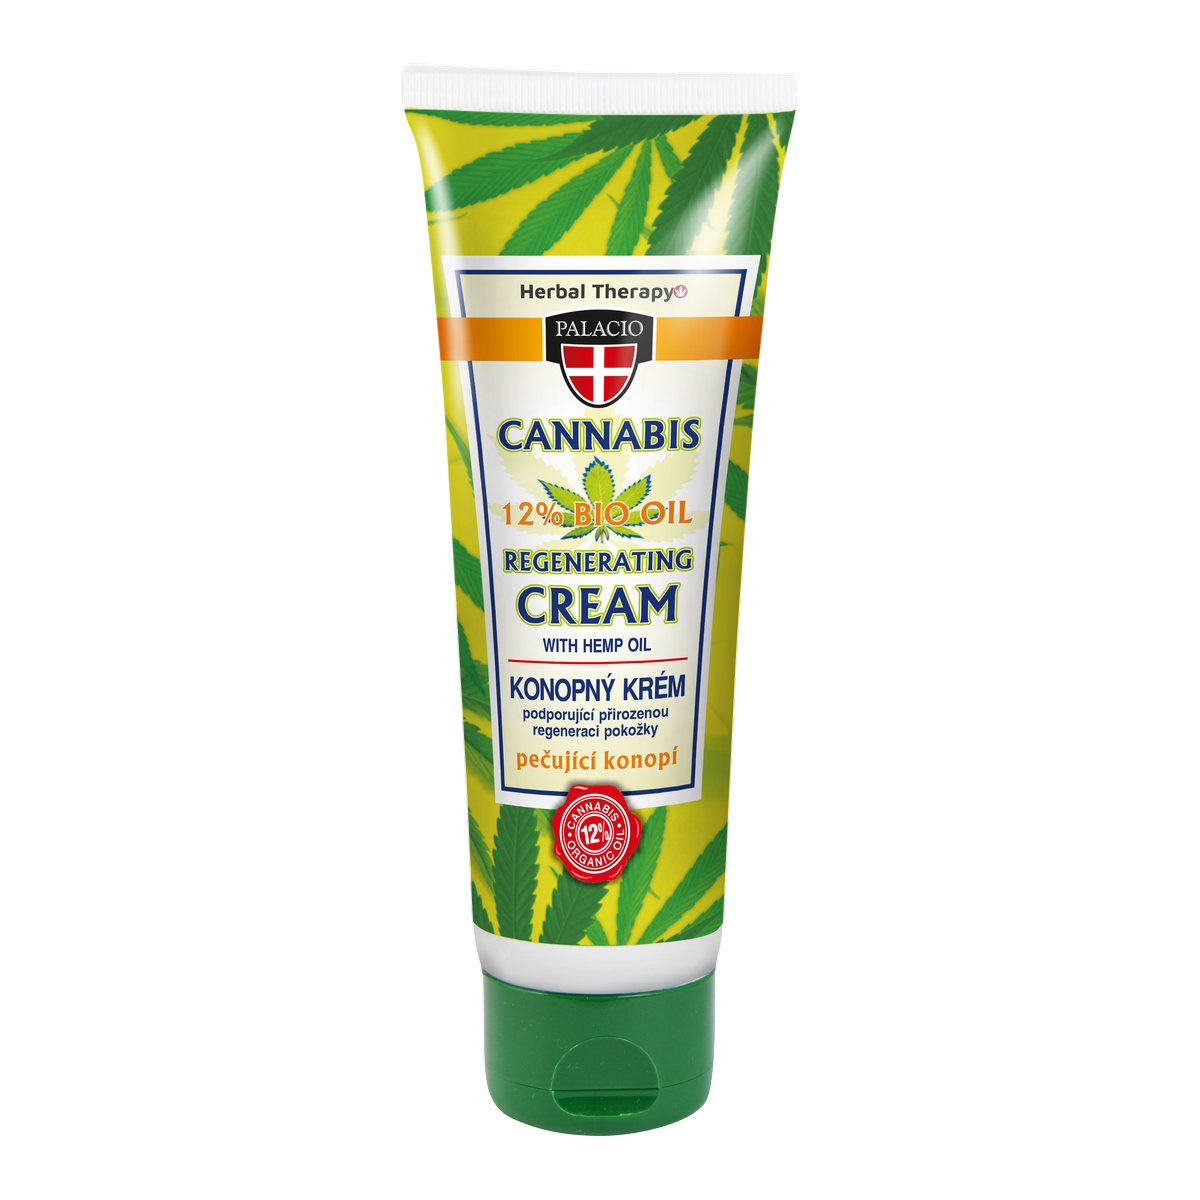 CANNABIS Hand Cream 125ml P0420 ENG WEB 53